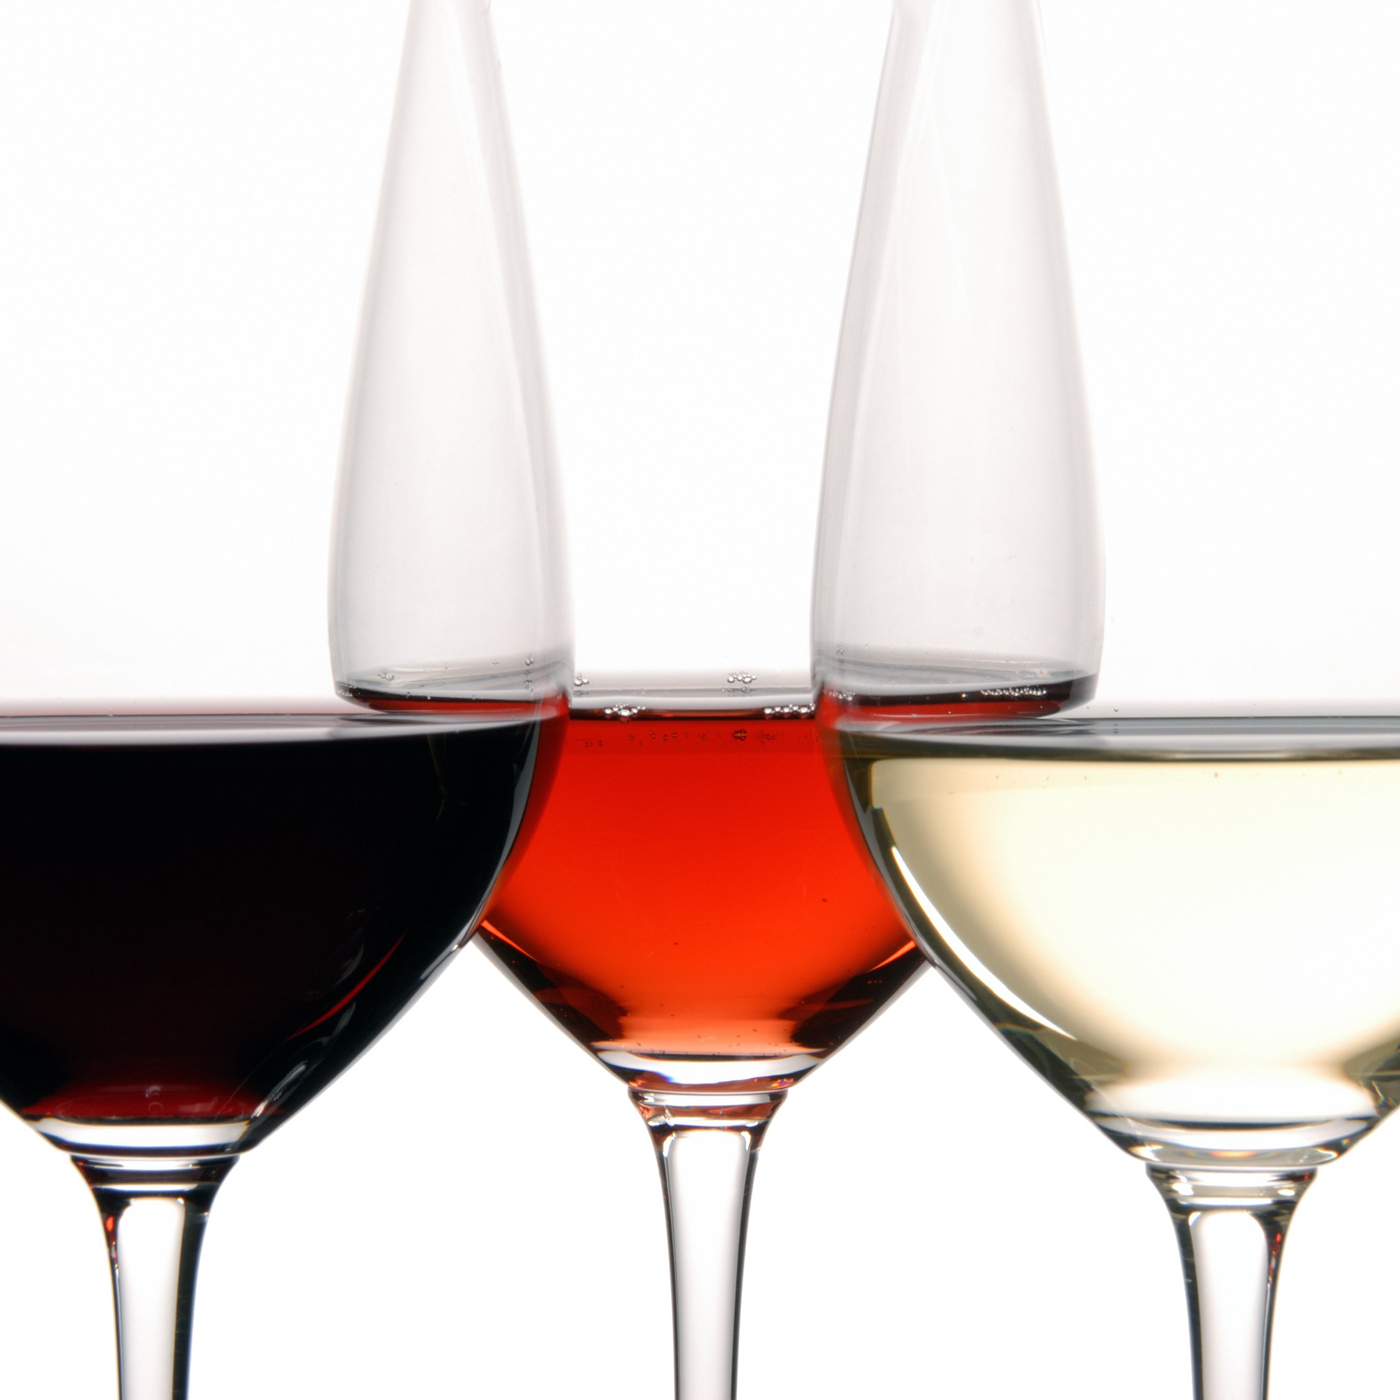 Zusammenspiel zwischen spanischem Wein und Speisen  - genannt “Maridaje” 